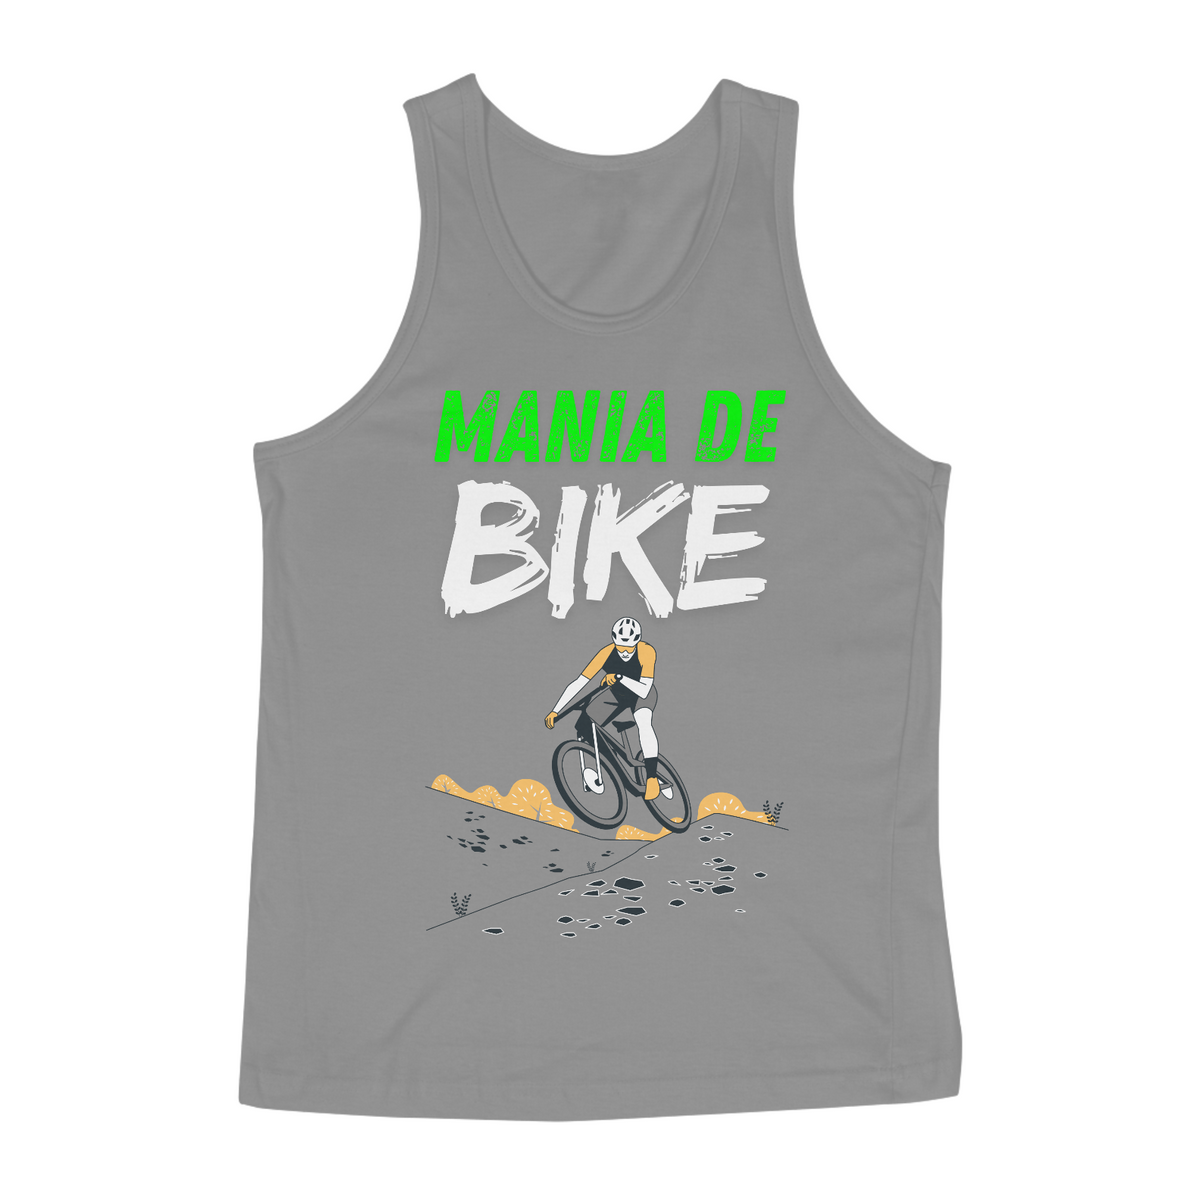 Nome do produto: Camiseta Mania de Bike